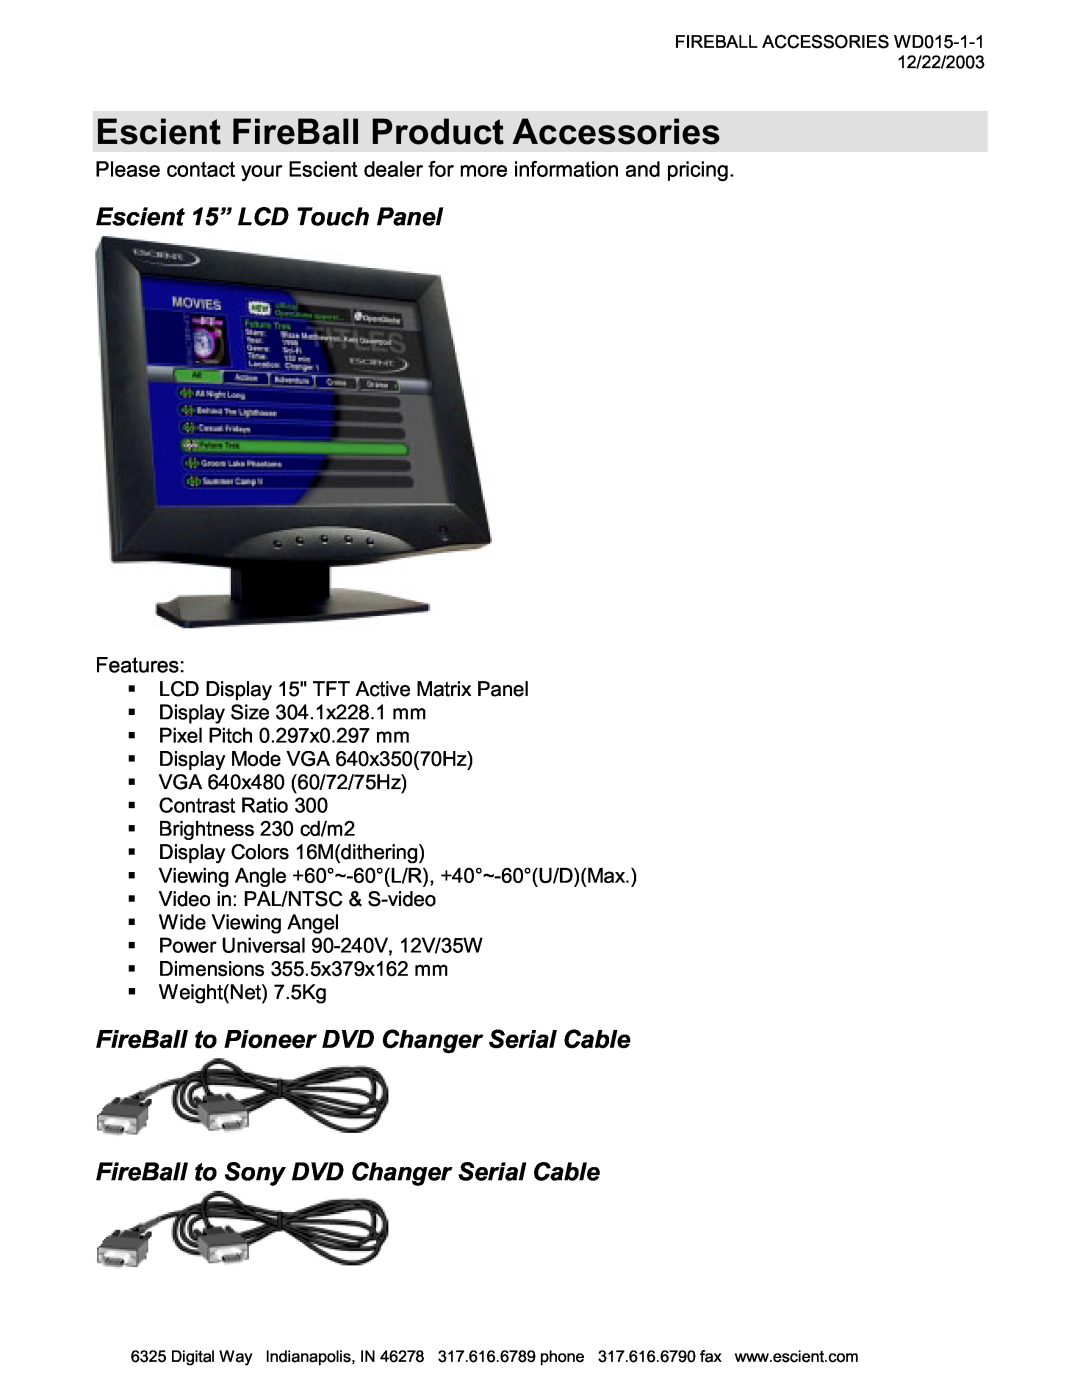 Escient MP-150 manual Escient FireBall Product Accessories, Escient 15” LCD Touch Panel 